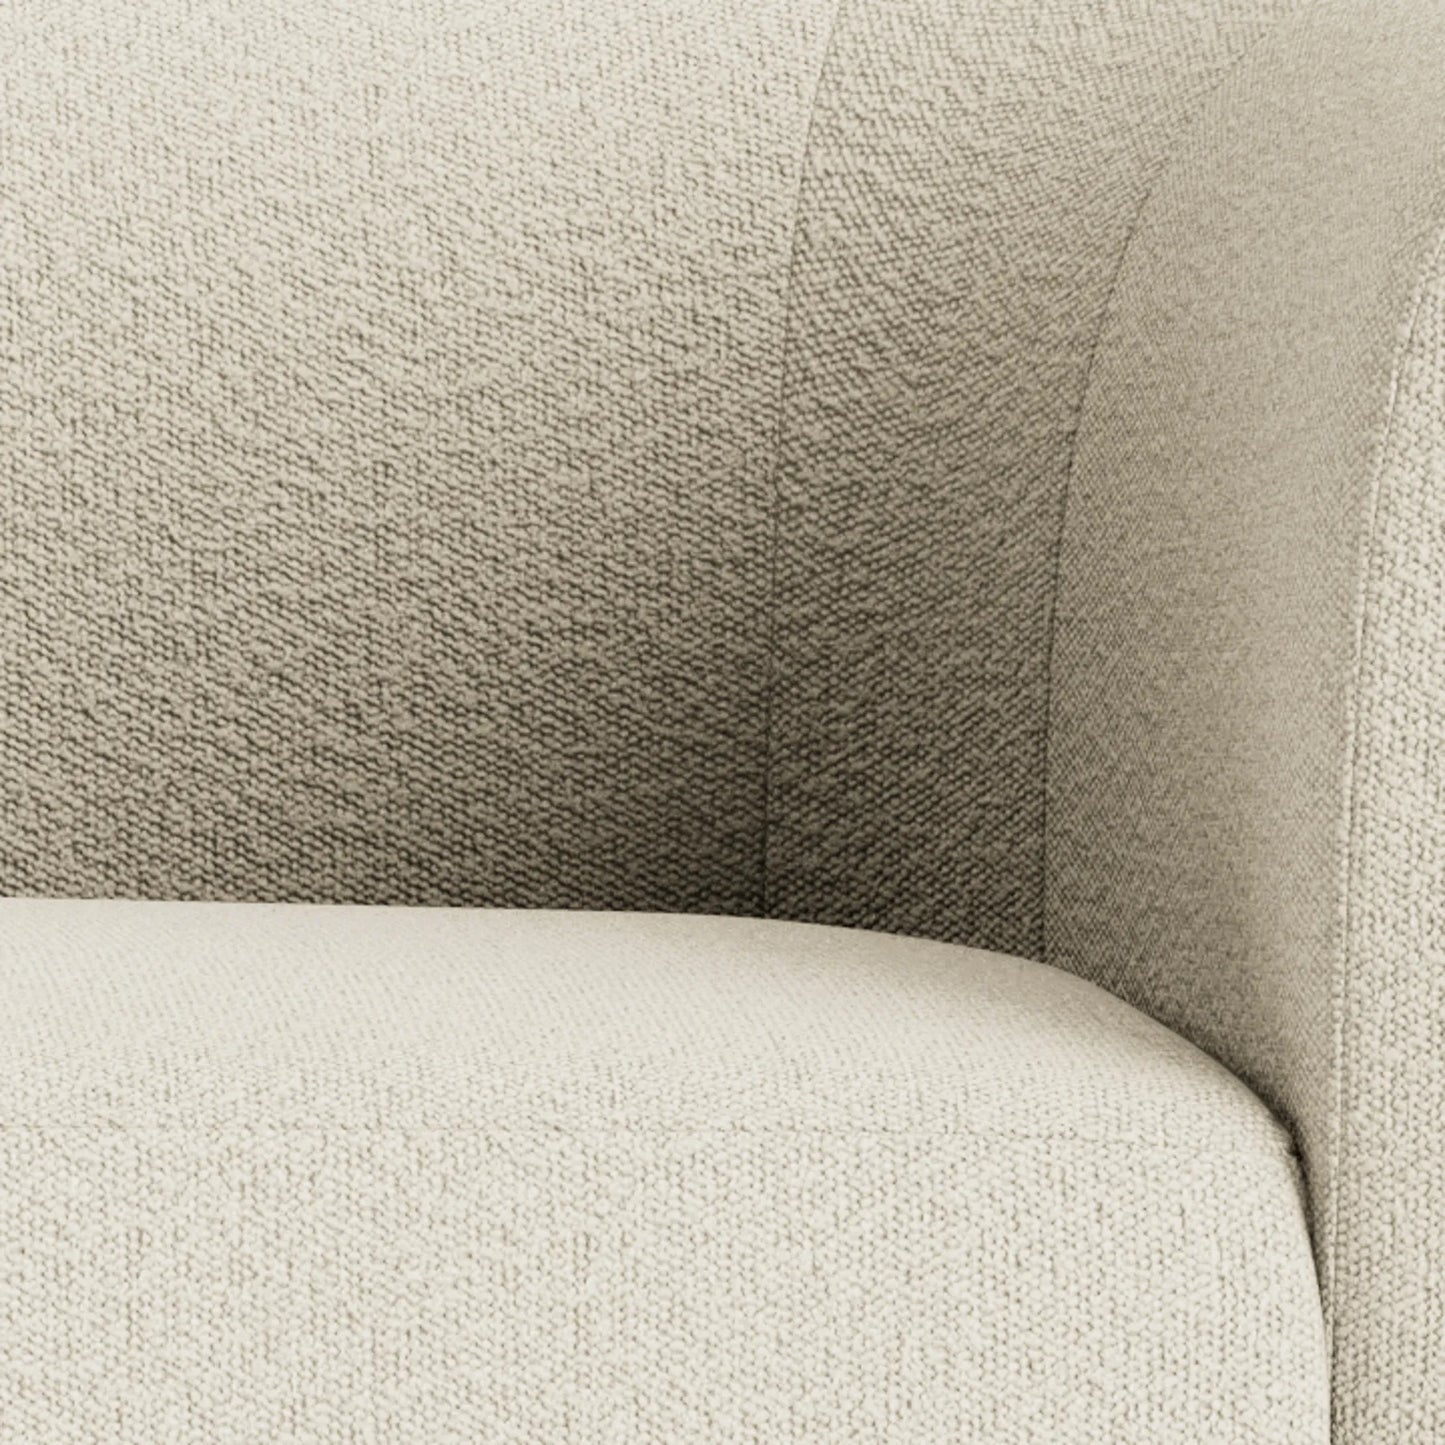 Berg 3 Seater Sofa - Copenhagen Grey